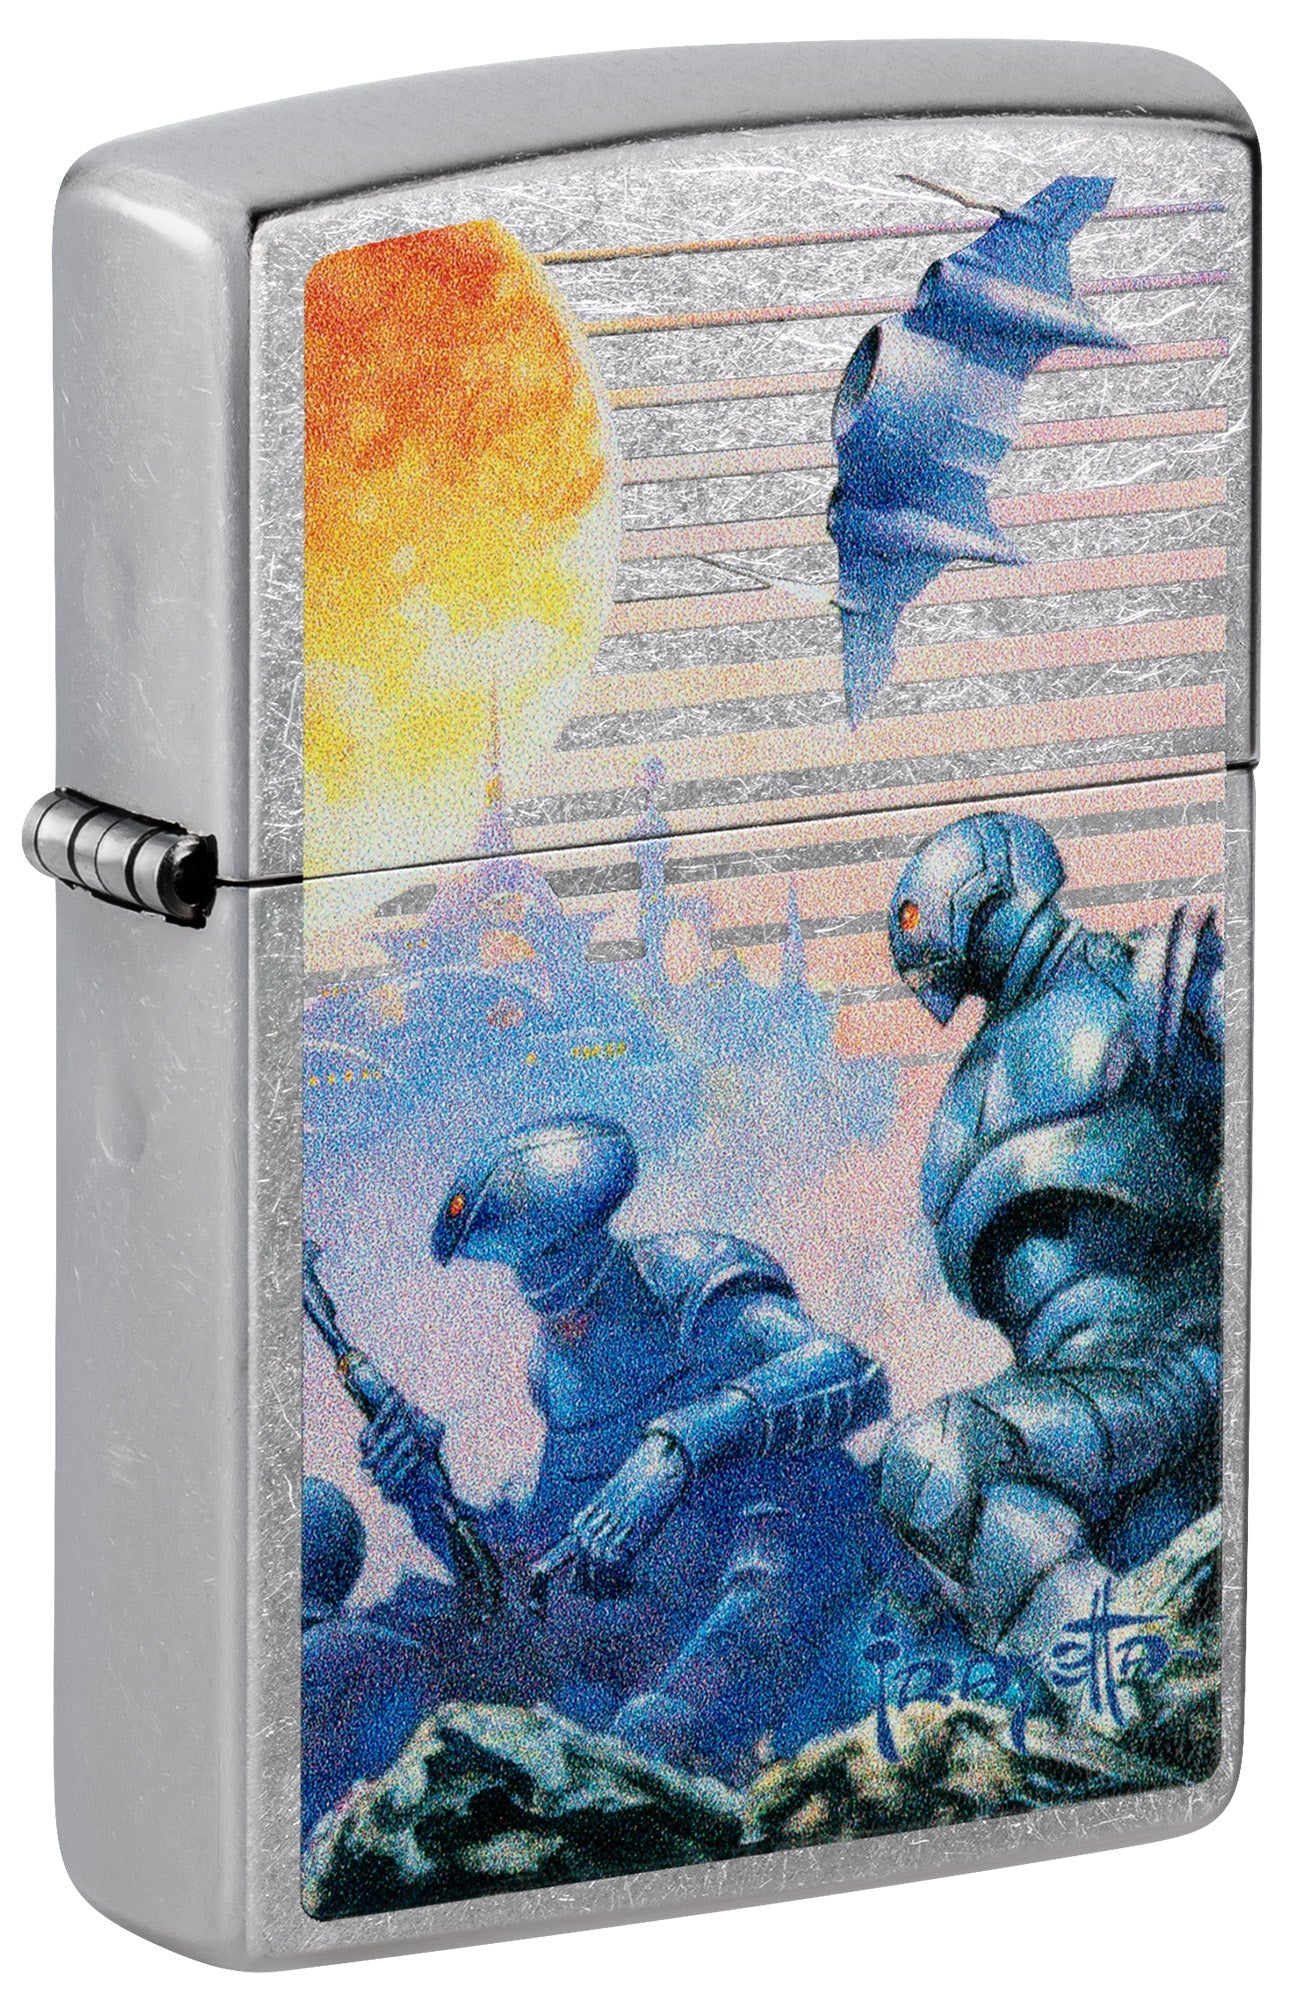 Zippo Lighter: Swords of Mars by Frank Frazetta - Street Chrome 81514